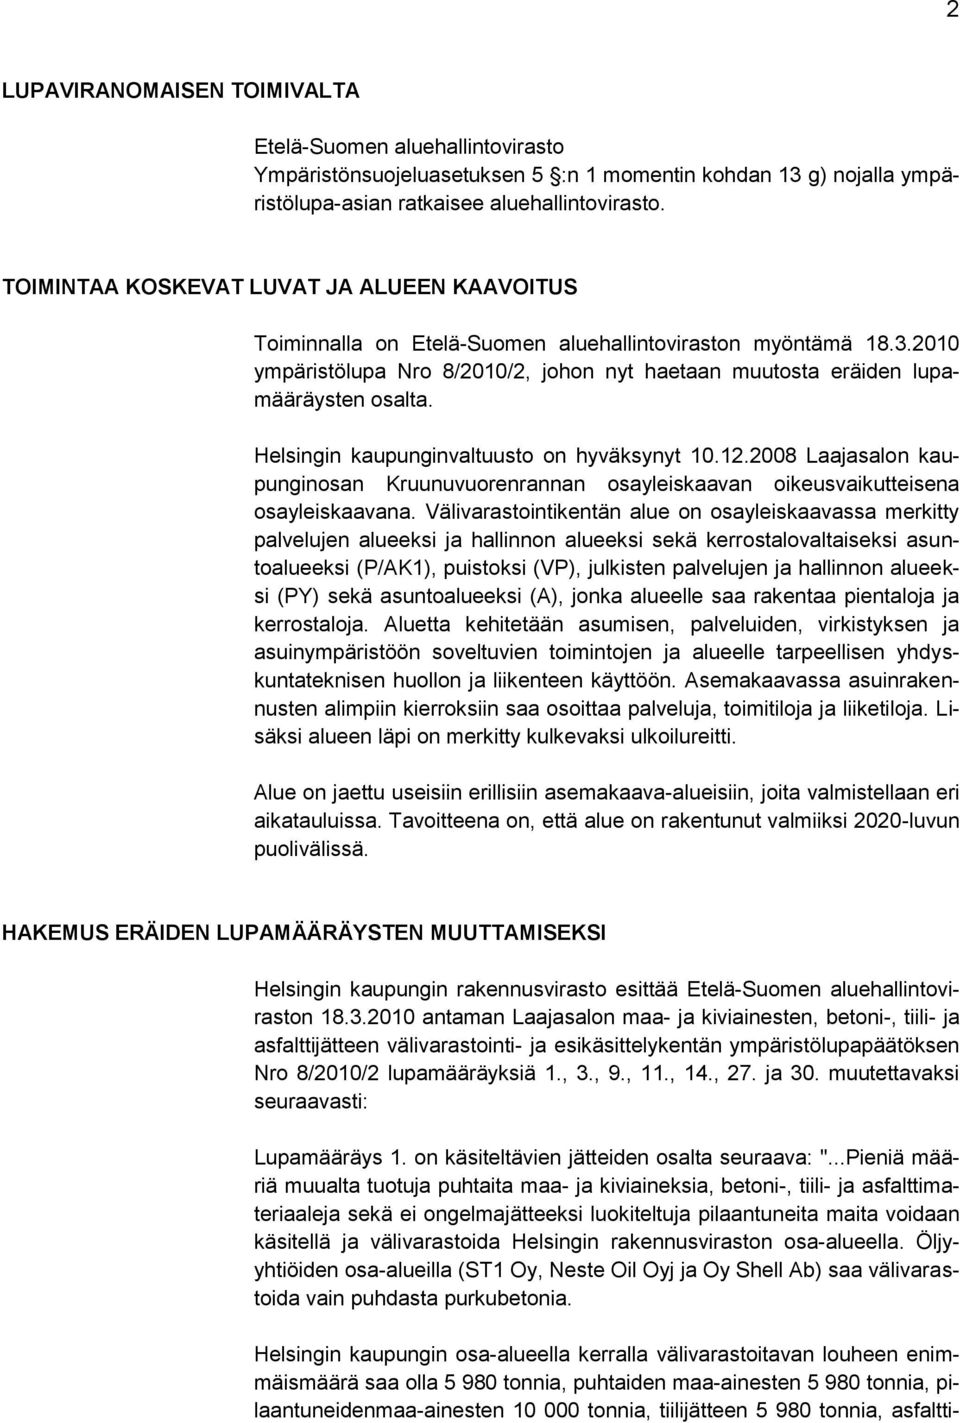 Helsingin kaupunginvaltuusto on hyväksynyt 10.12.2008 Laajasalon kaupunginosan Kruunuvuorenrannan osayleiskaavan oikeusvaikutteisena osayleiskaavana.